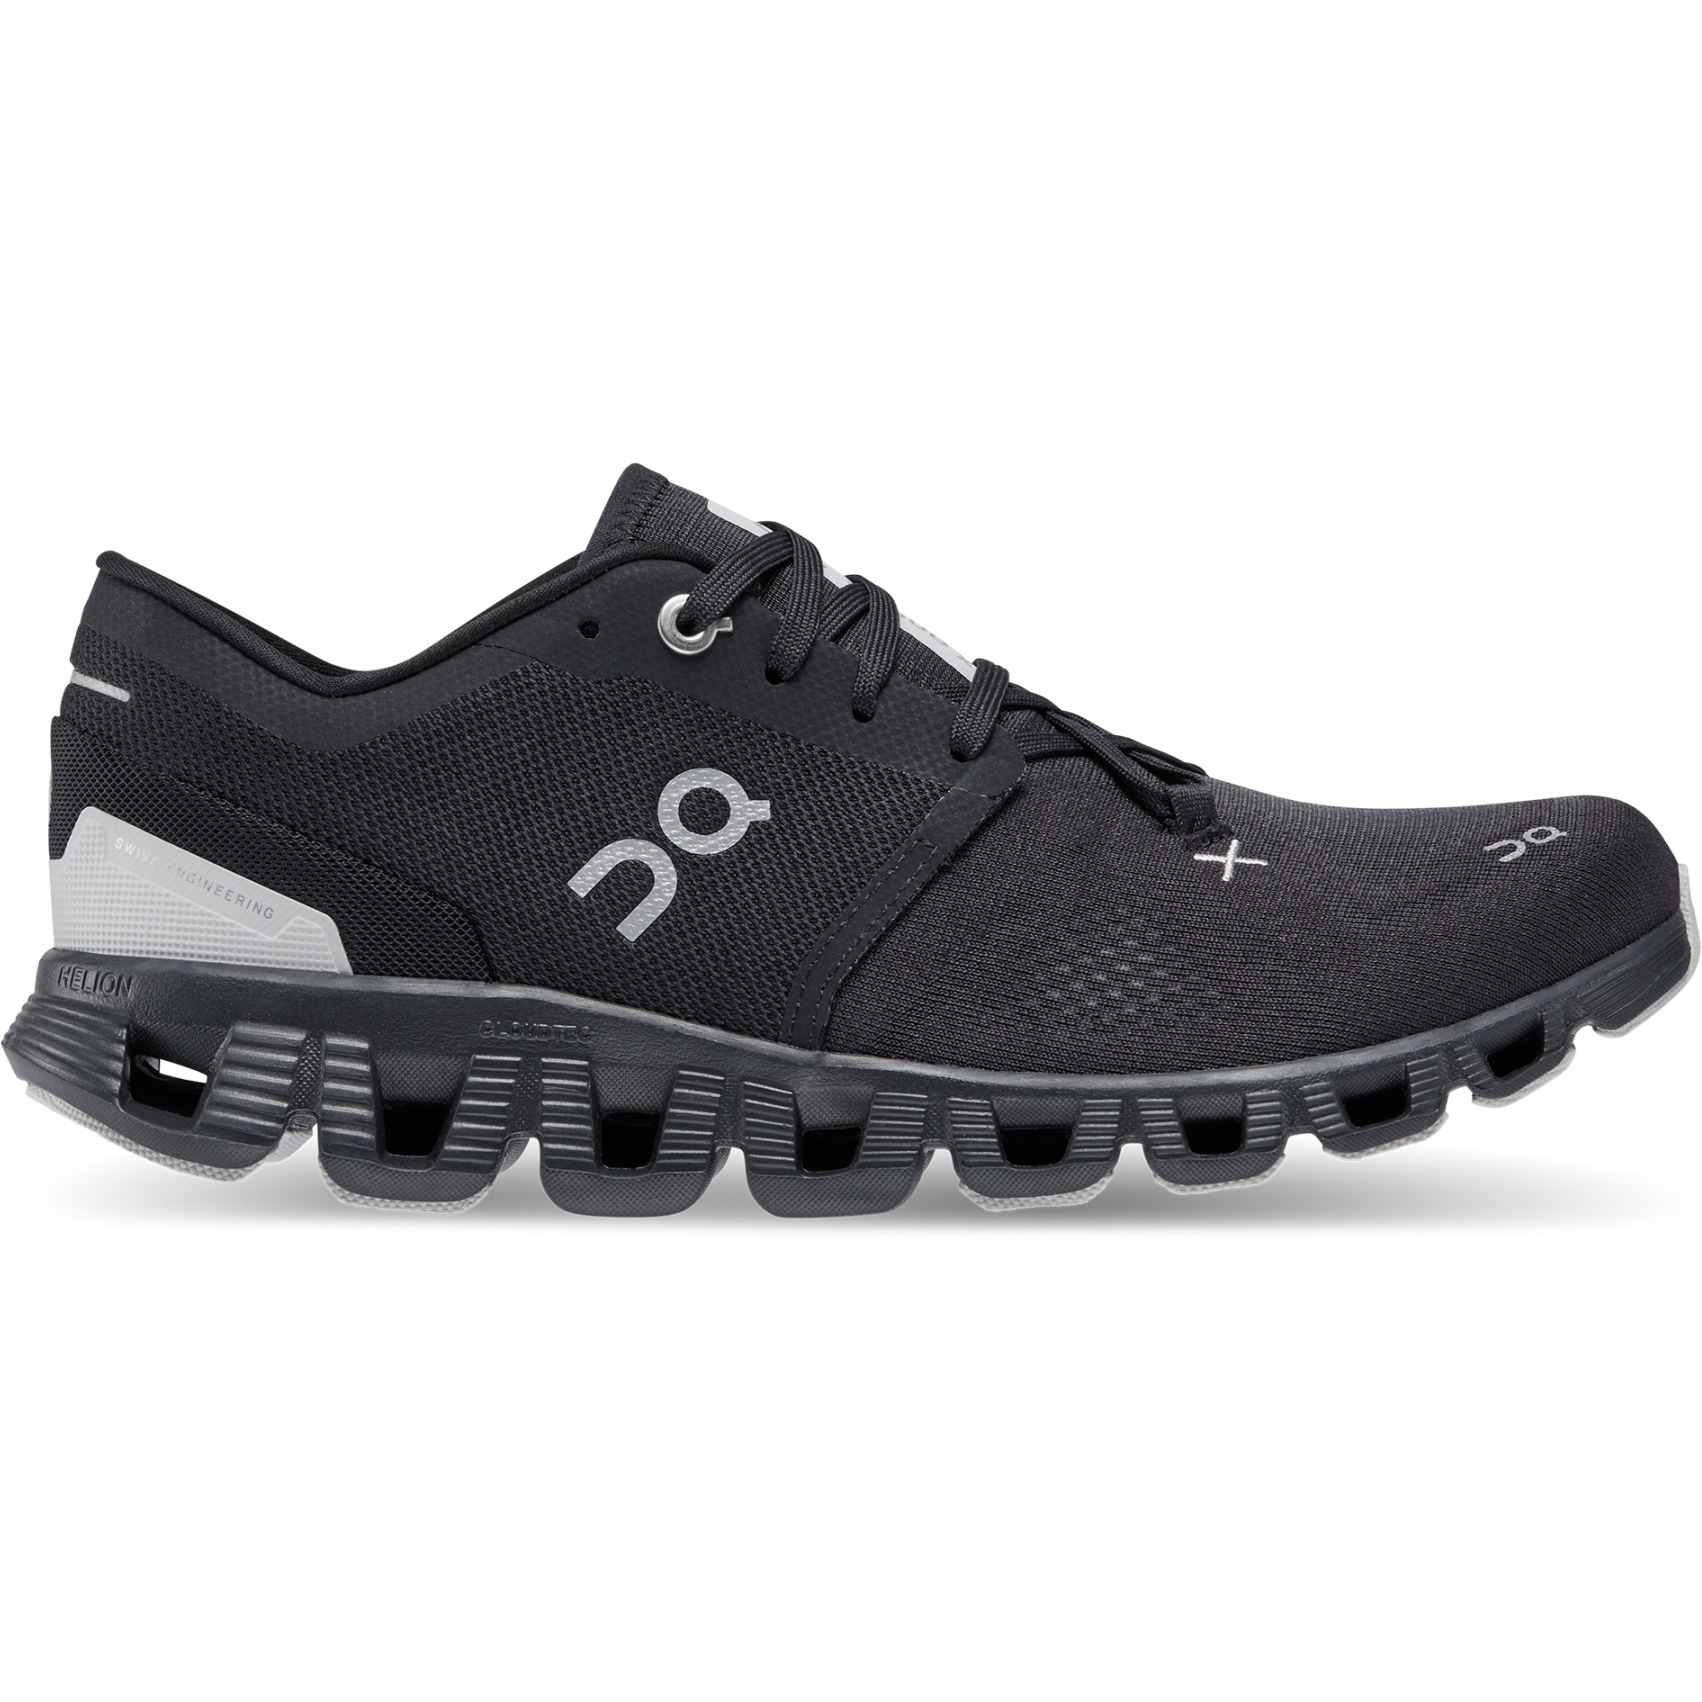 Produktbild von On Cloud X 3 Fitness Schuhe Damen - Schwarz